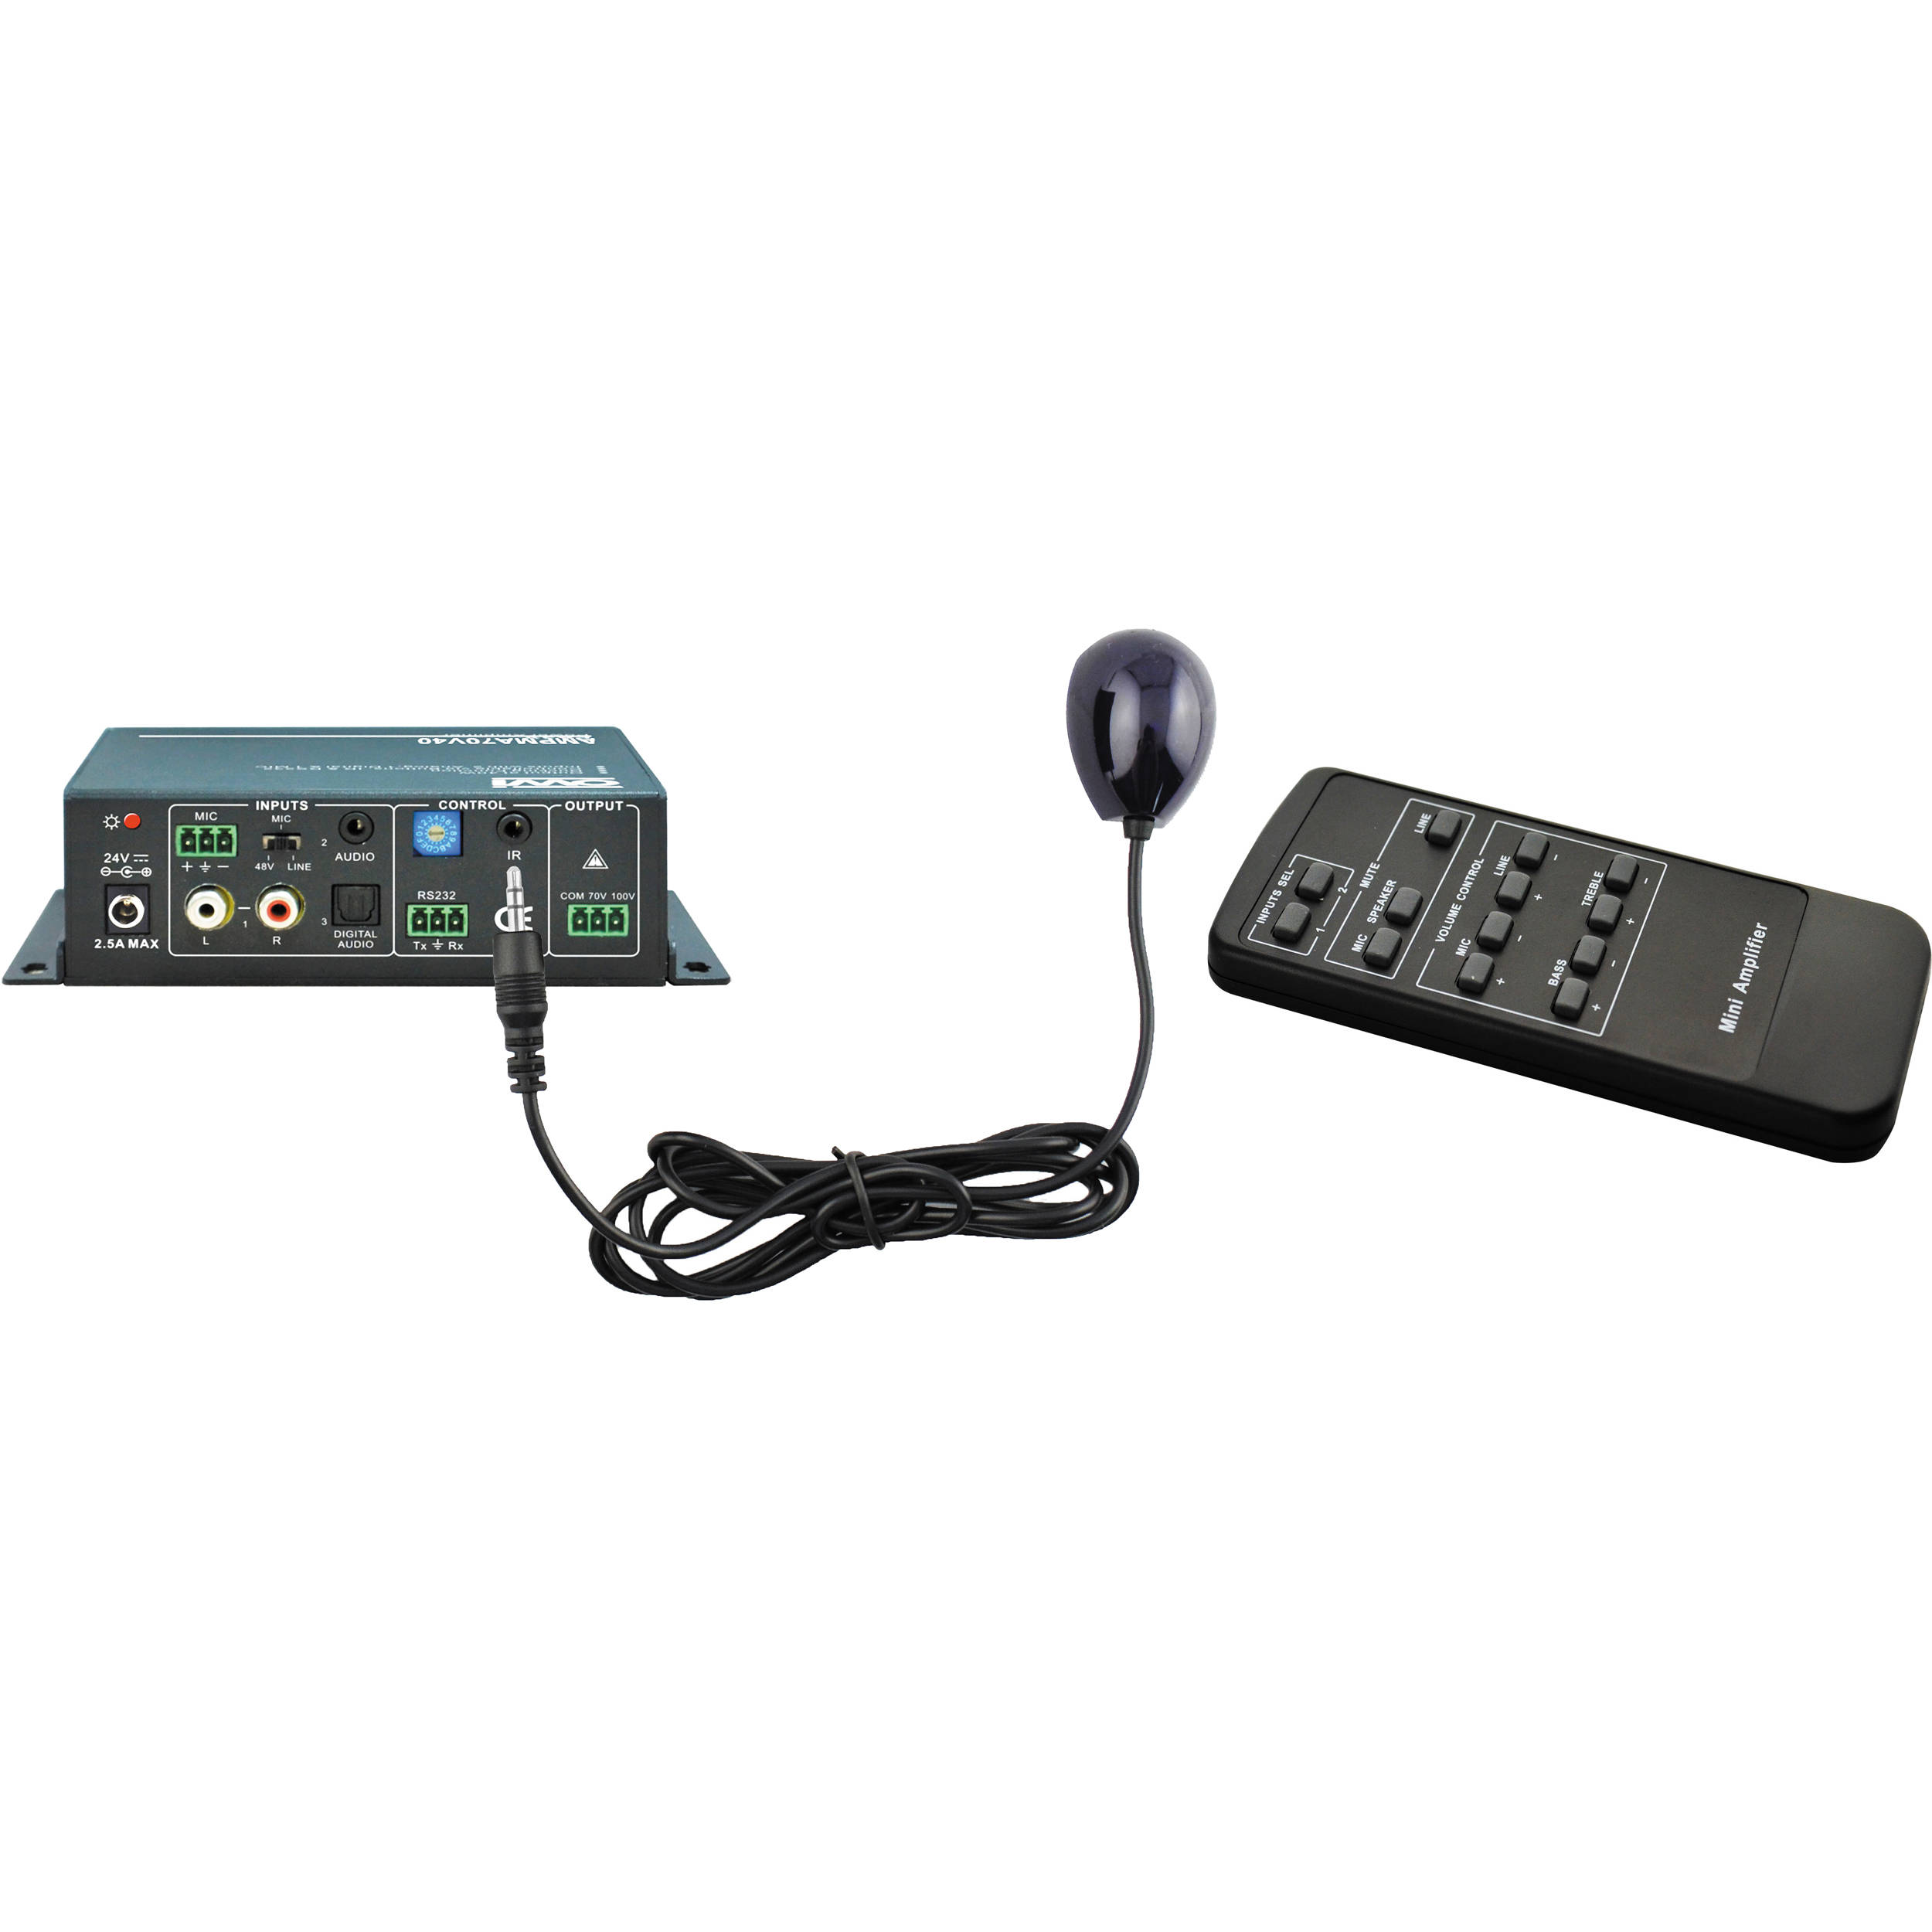 remote control mini